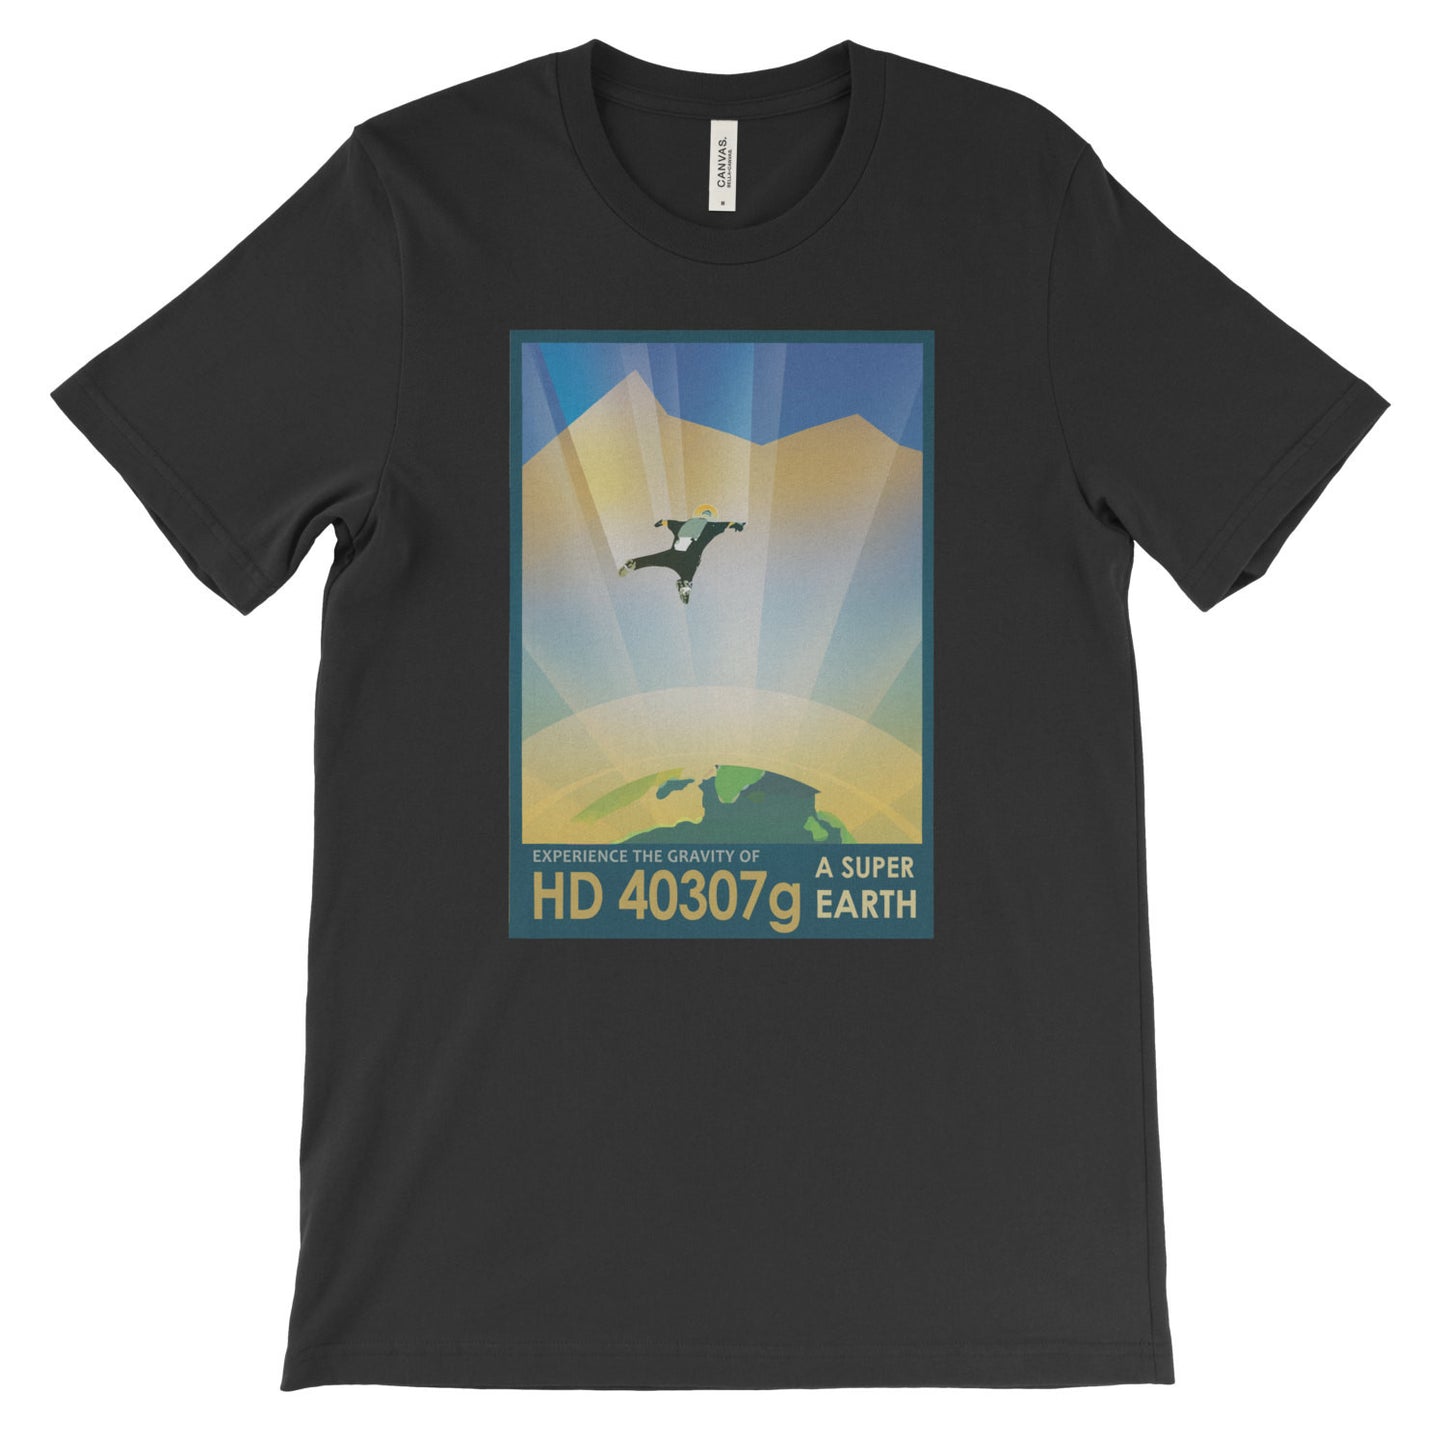 HD 40307g Poster Print T-Shirt from NASA - Mighty Circus